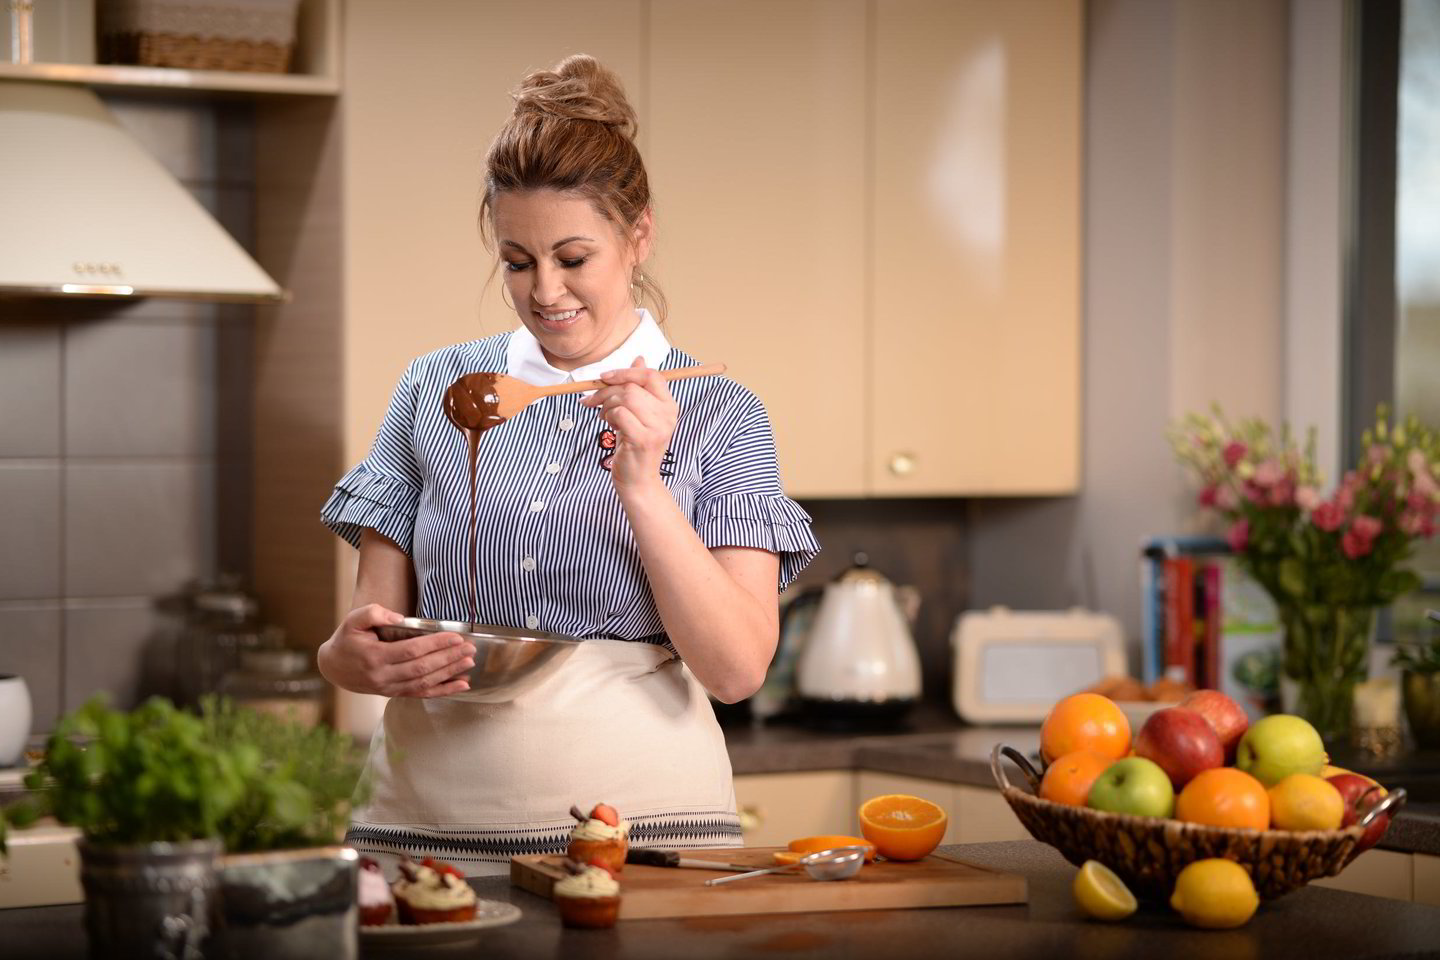  Maisto tinklaraščių „Skanus gyvenimas“ ir „Maisto klubas“ kūrėja, kulinarinės TV3 laidos „Virtuvės istorijos“ vedėja, šefė Ilona Juciūtė - Čibirkienė neseniai pristatė savo pirmąją receptų knygą.<br> TV3 nuotr. 